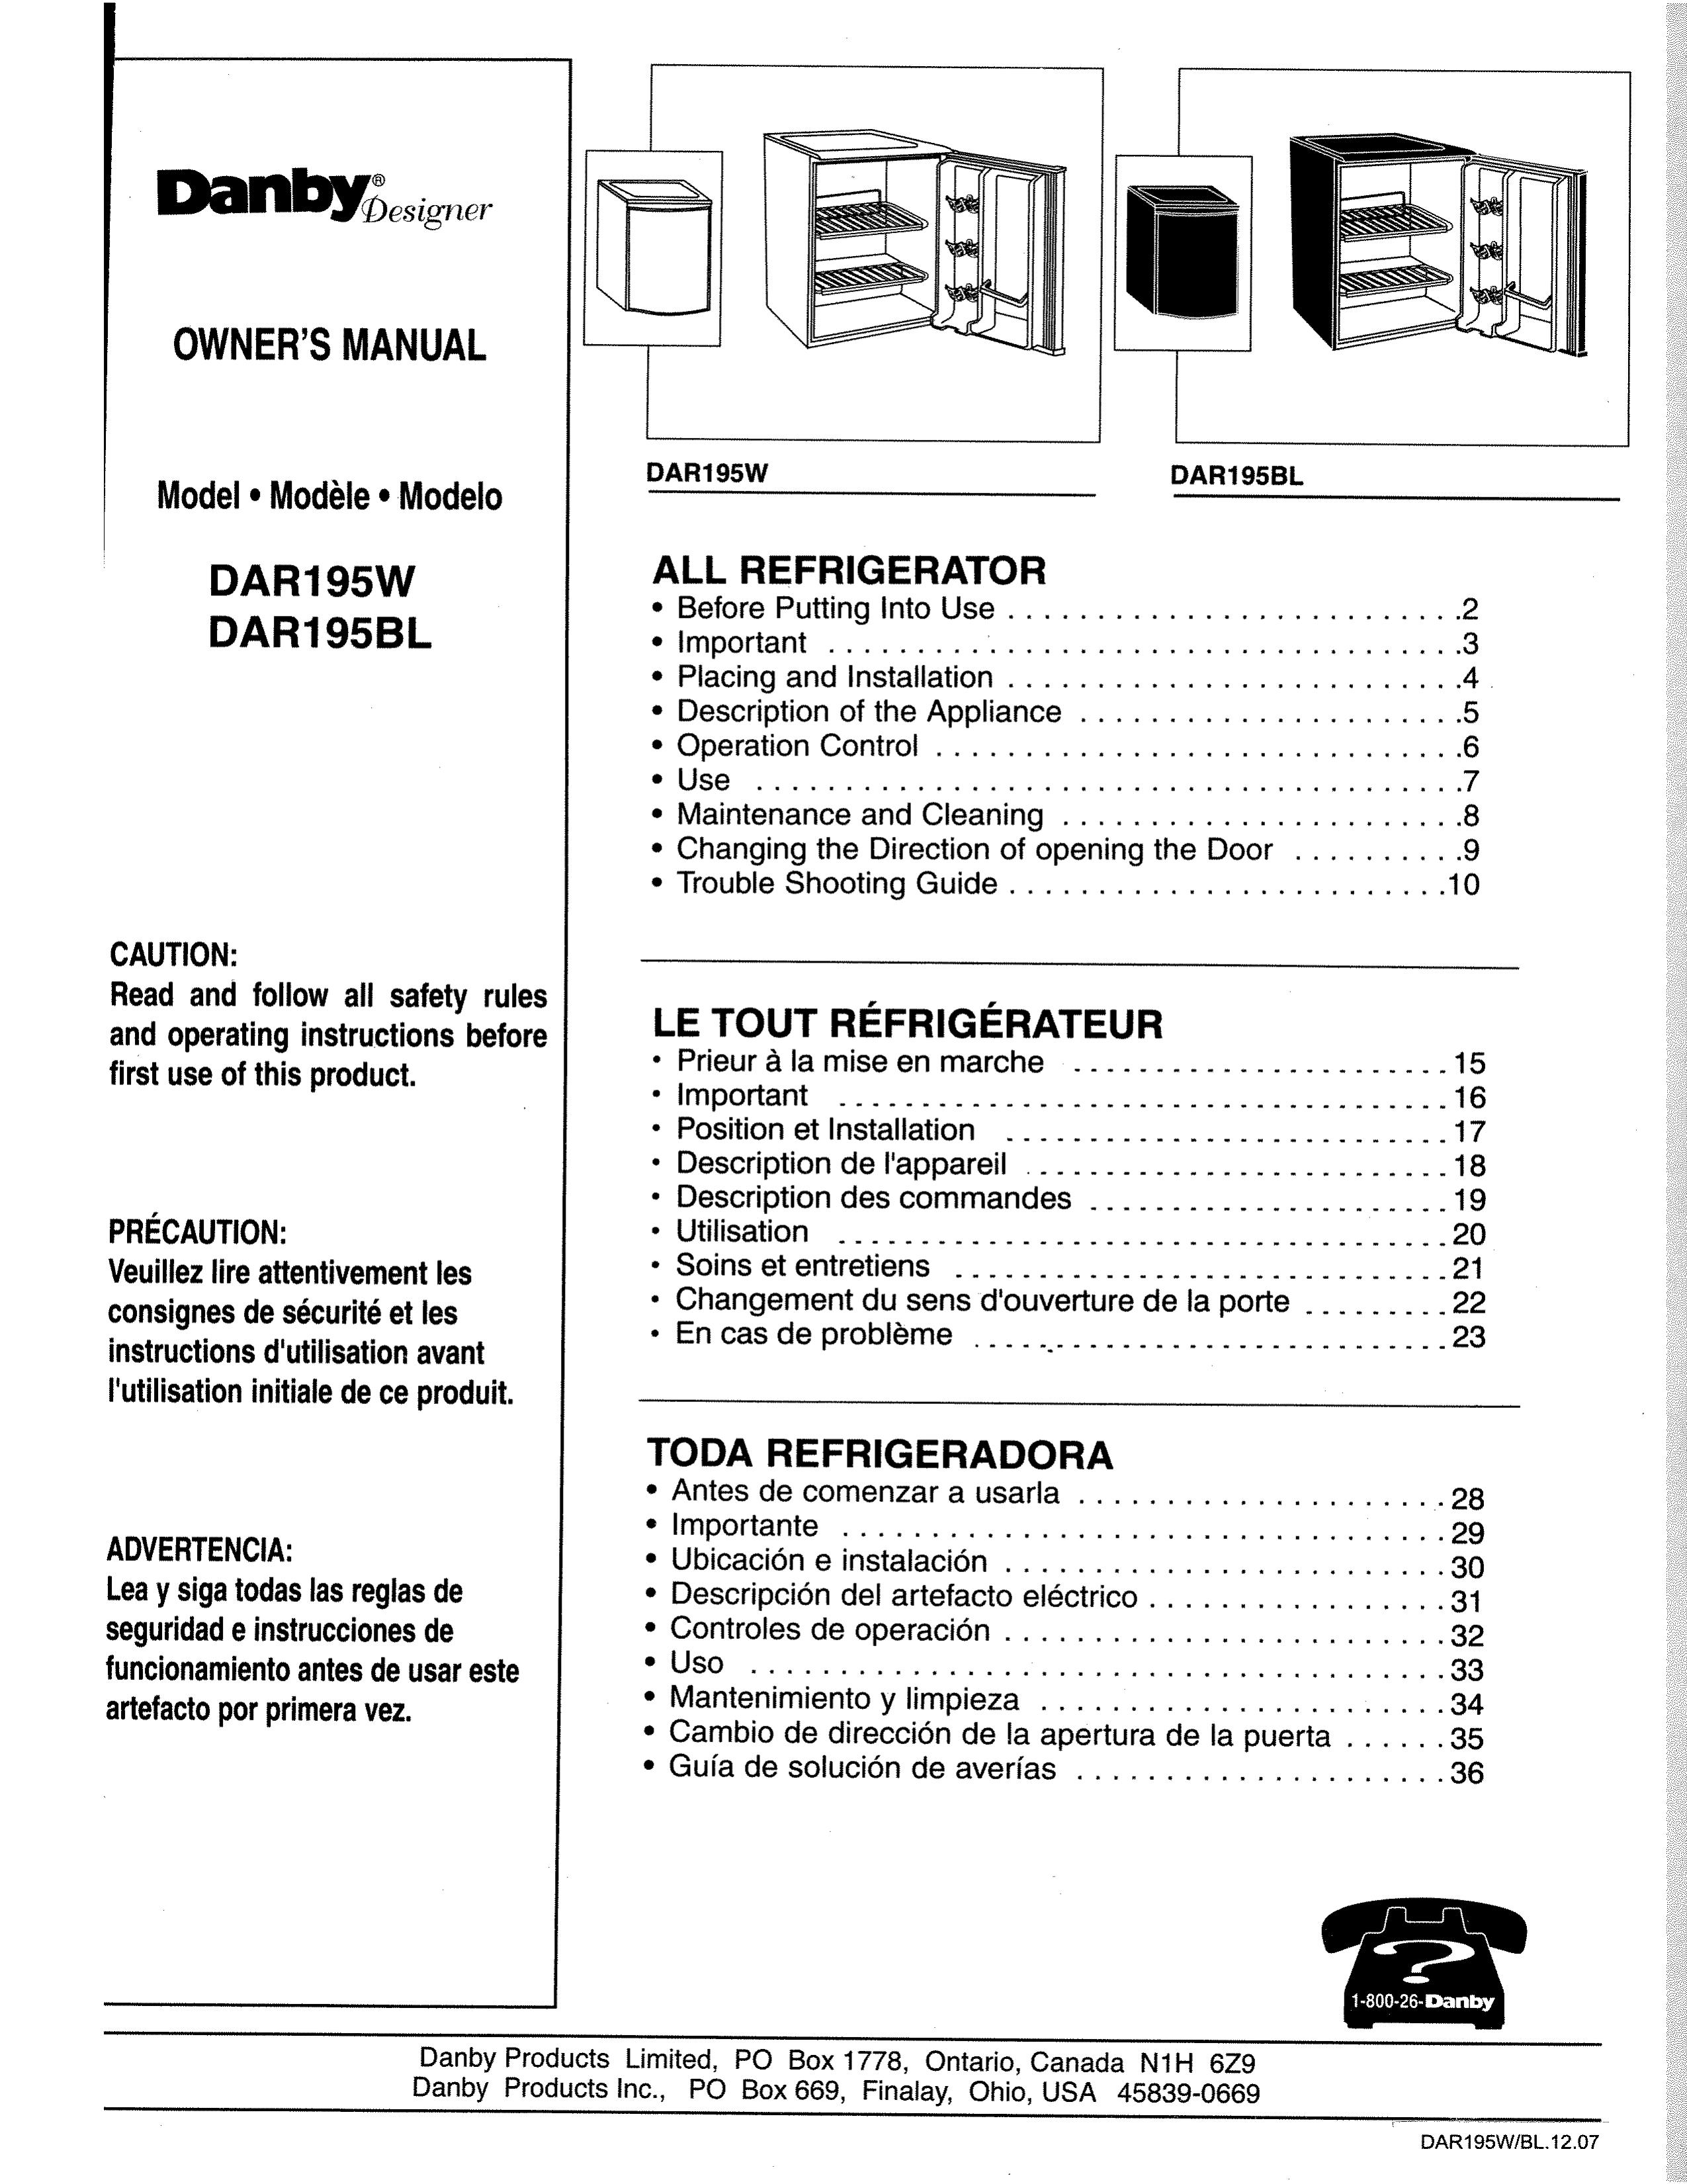 Danby DAR195W Refrigerator User Manual